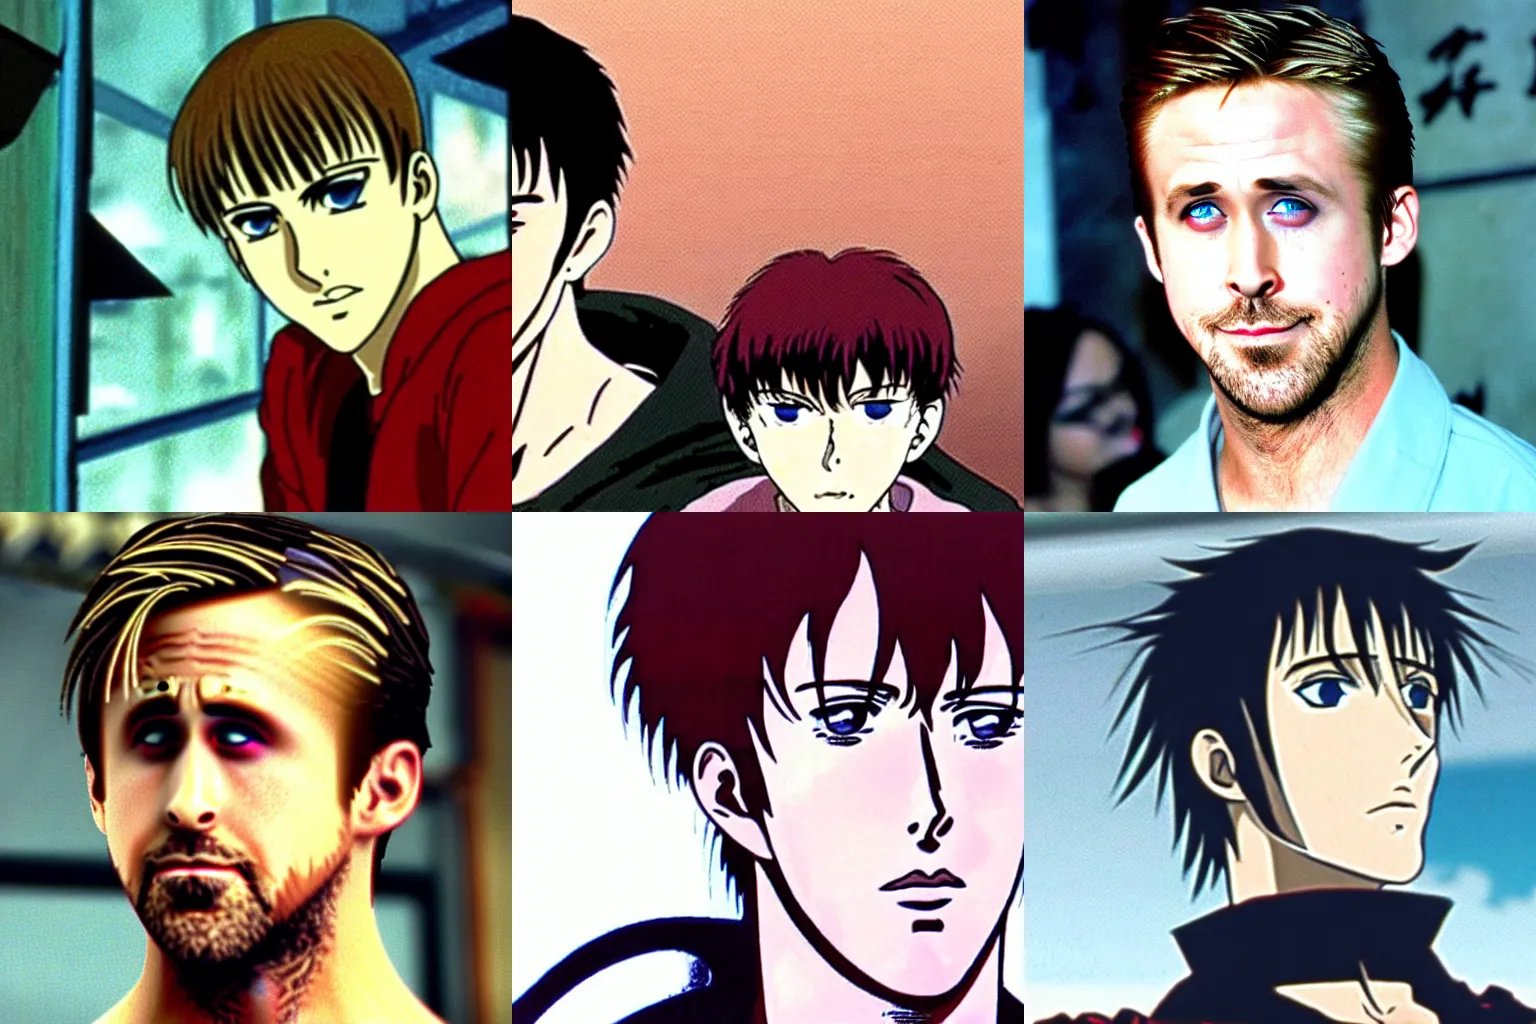 Prompt: ryan gosling in 1 9 9 7 berserk anime,